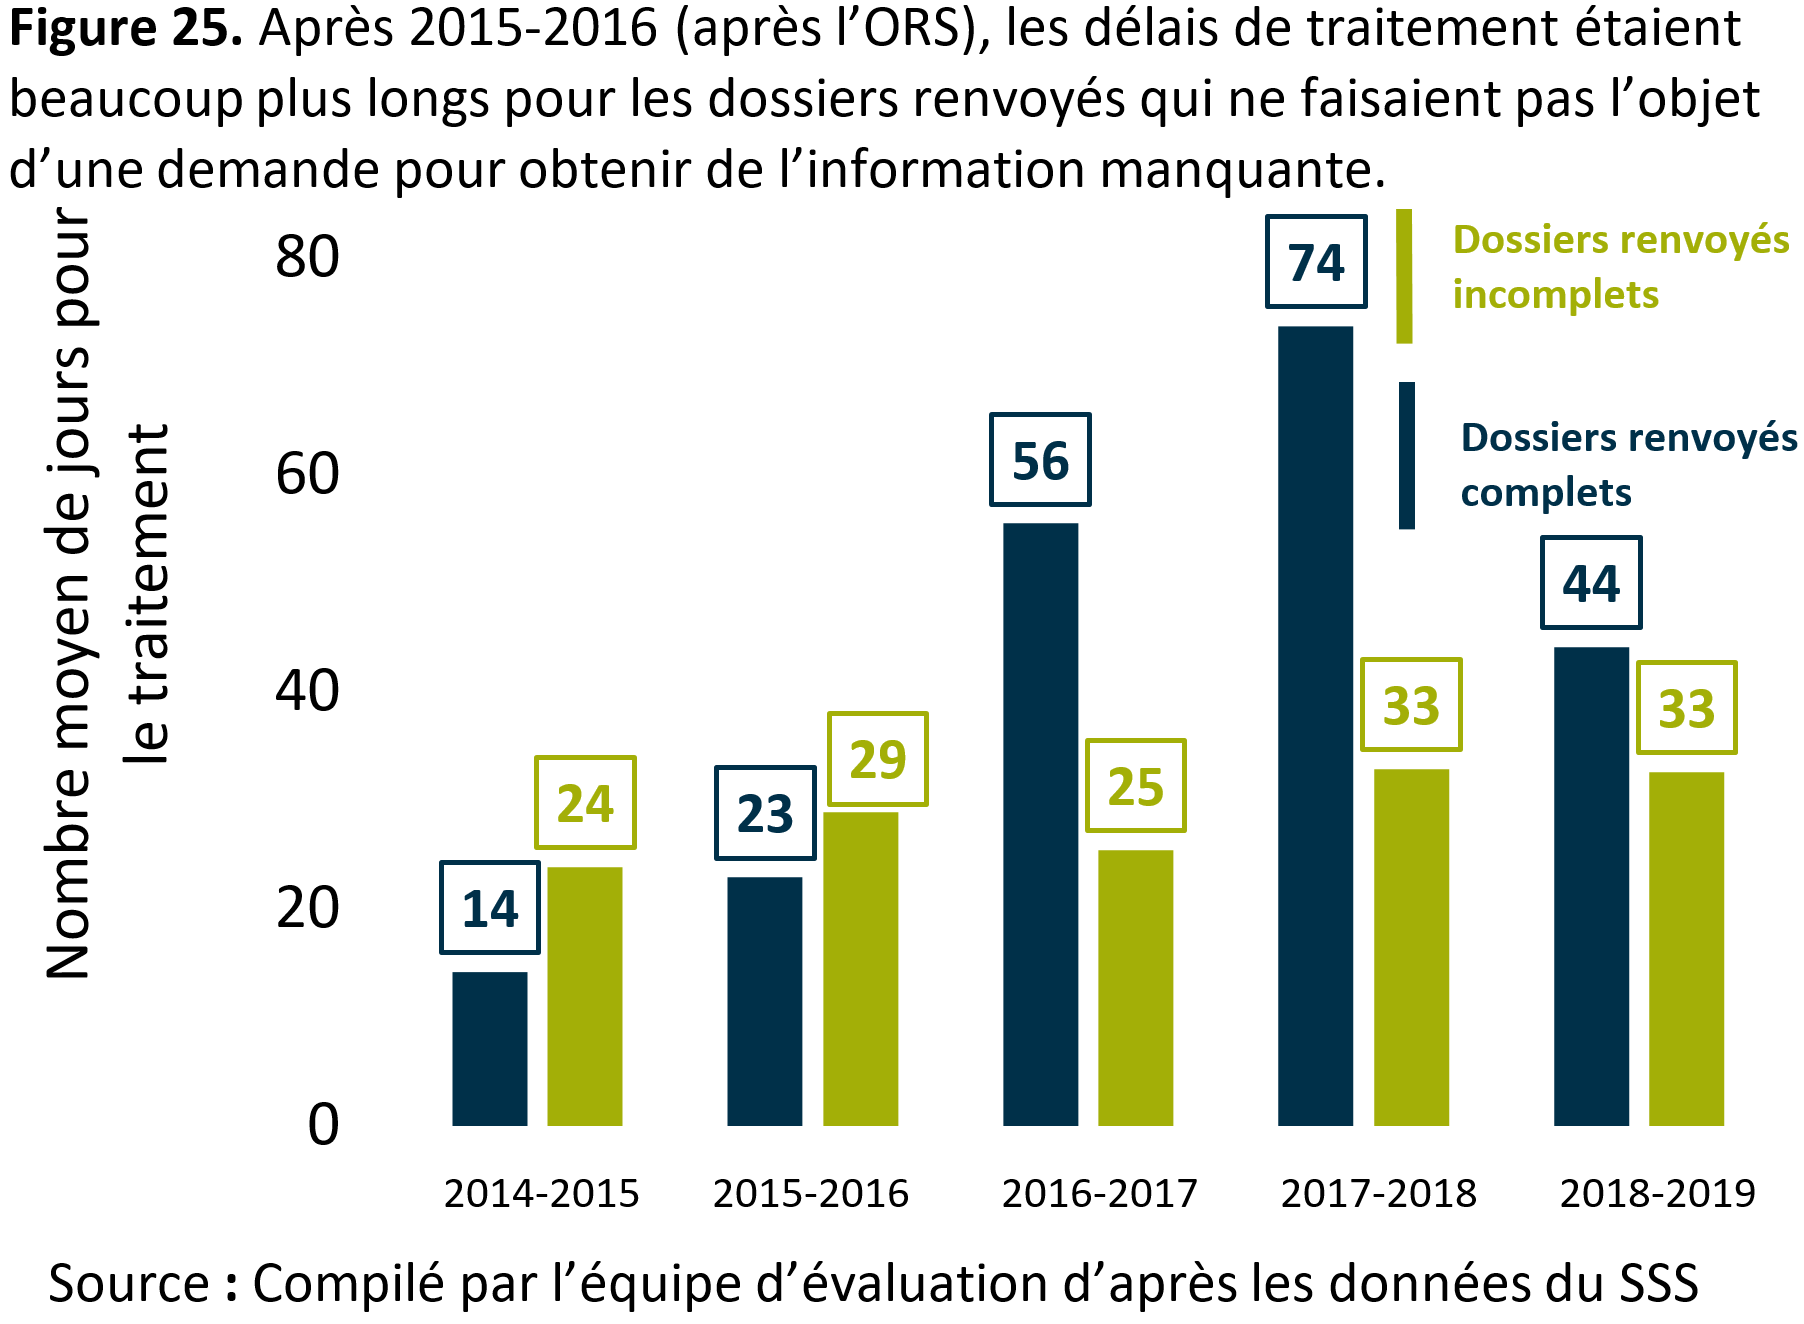 La figure 25 montre que l’après 2015 à 2016 (après l’<abbr>ORS</abbr>), les délais de traitement étaient beaucoup plus longs pour les dossiers renvoyés qui ne faisaient pas l’objet d’une demande pour obtenir de l’information manquante.